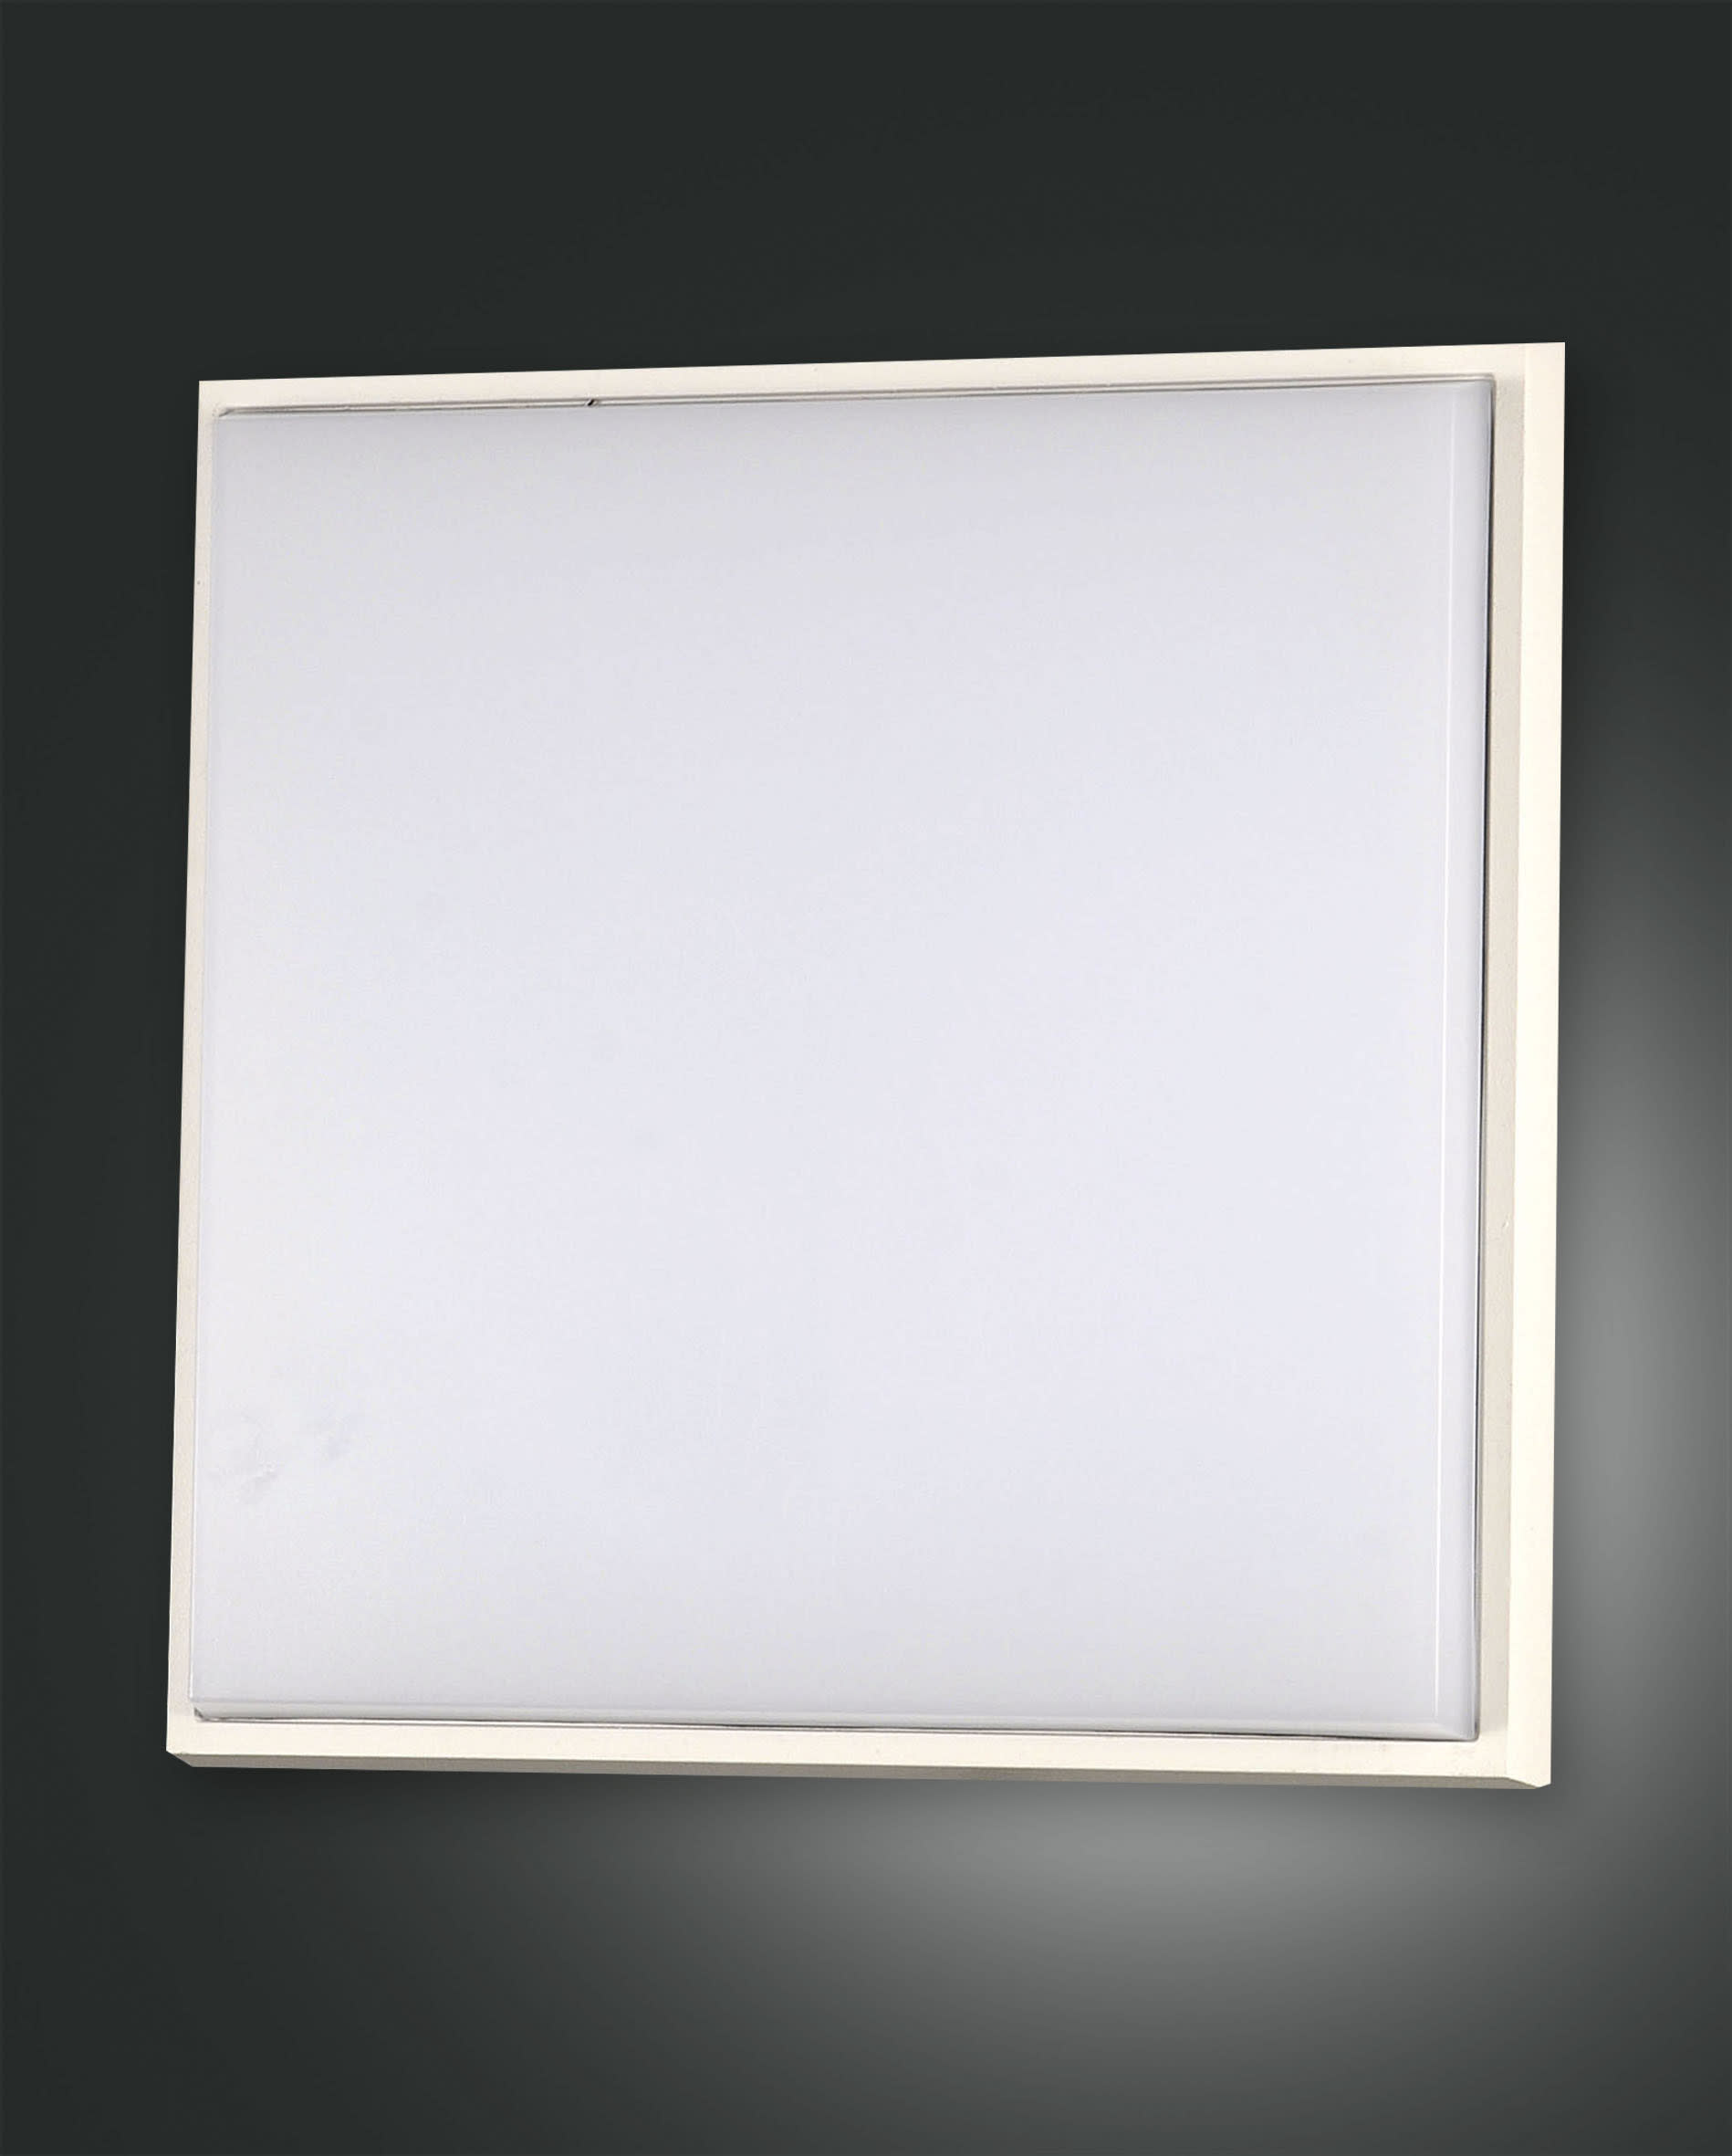 LED-Deckenleuchte Desdy, weiß, 30 x 30 cm